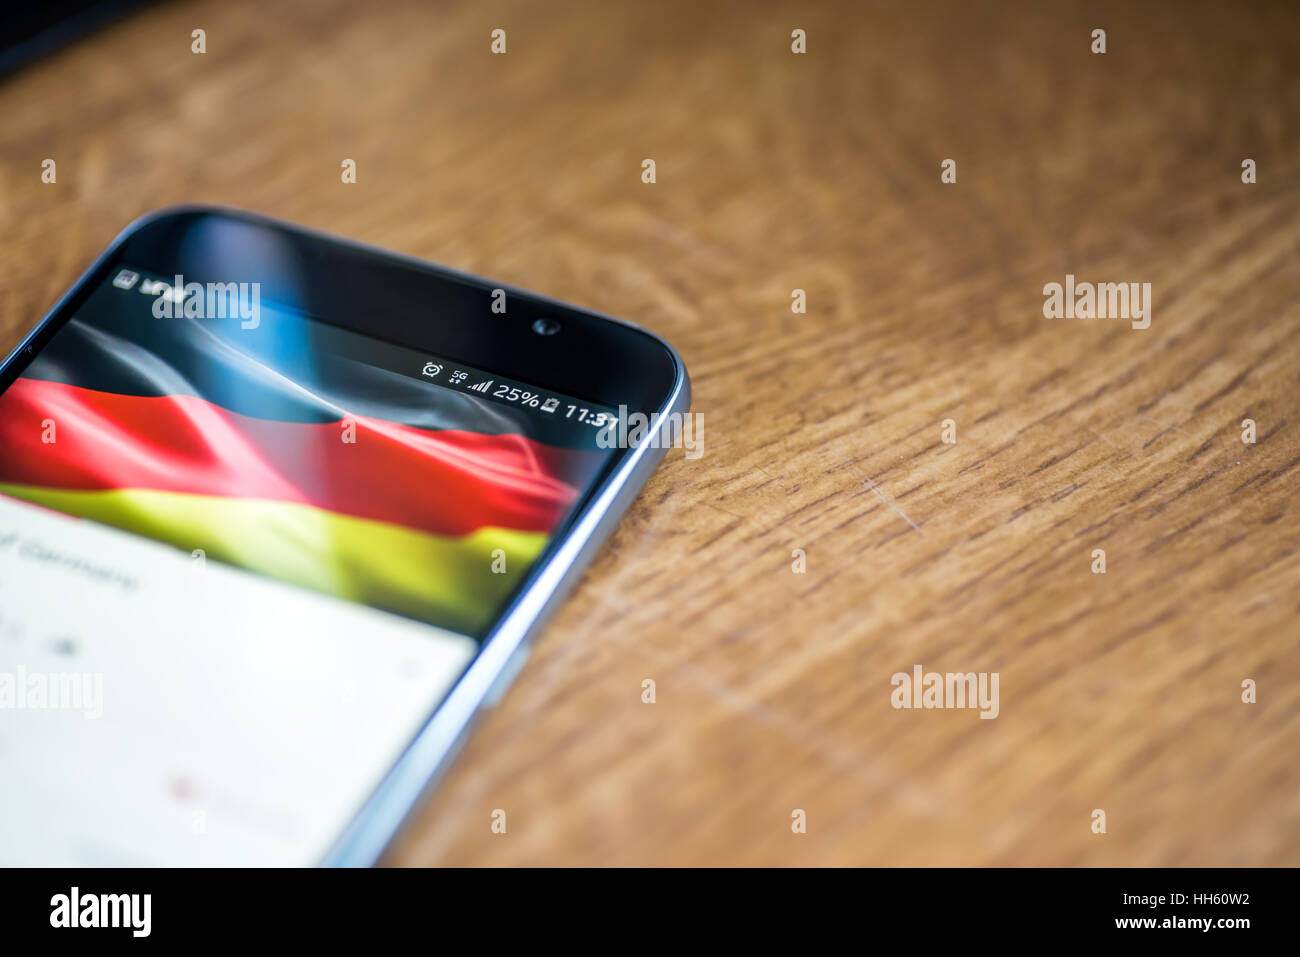 Sur fond de bois avec smartphone 5G Réseau inscription 25  % et drapeau allemand sur l'écran. Banque D'Images